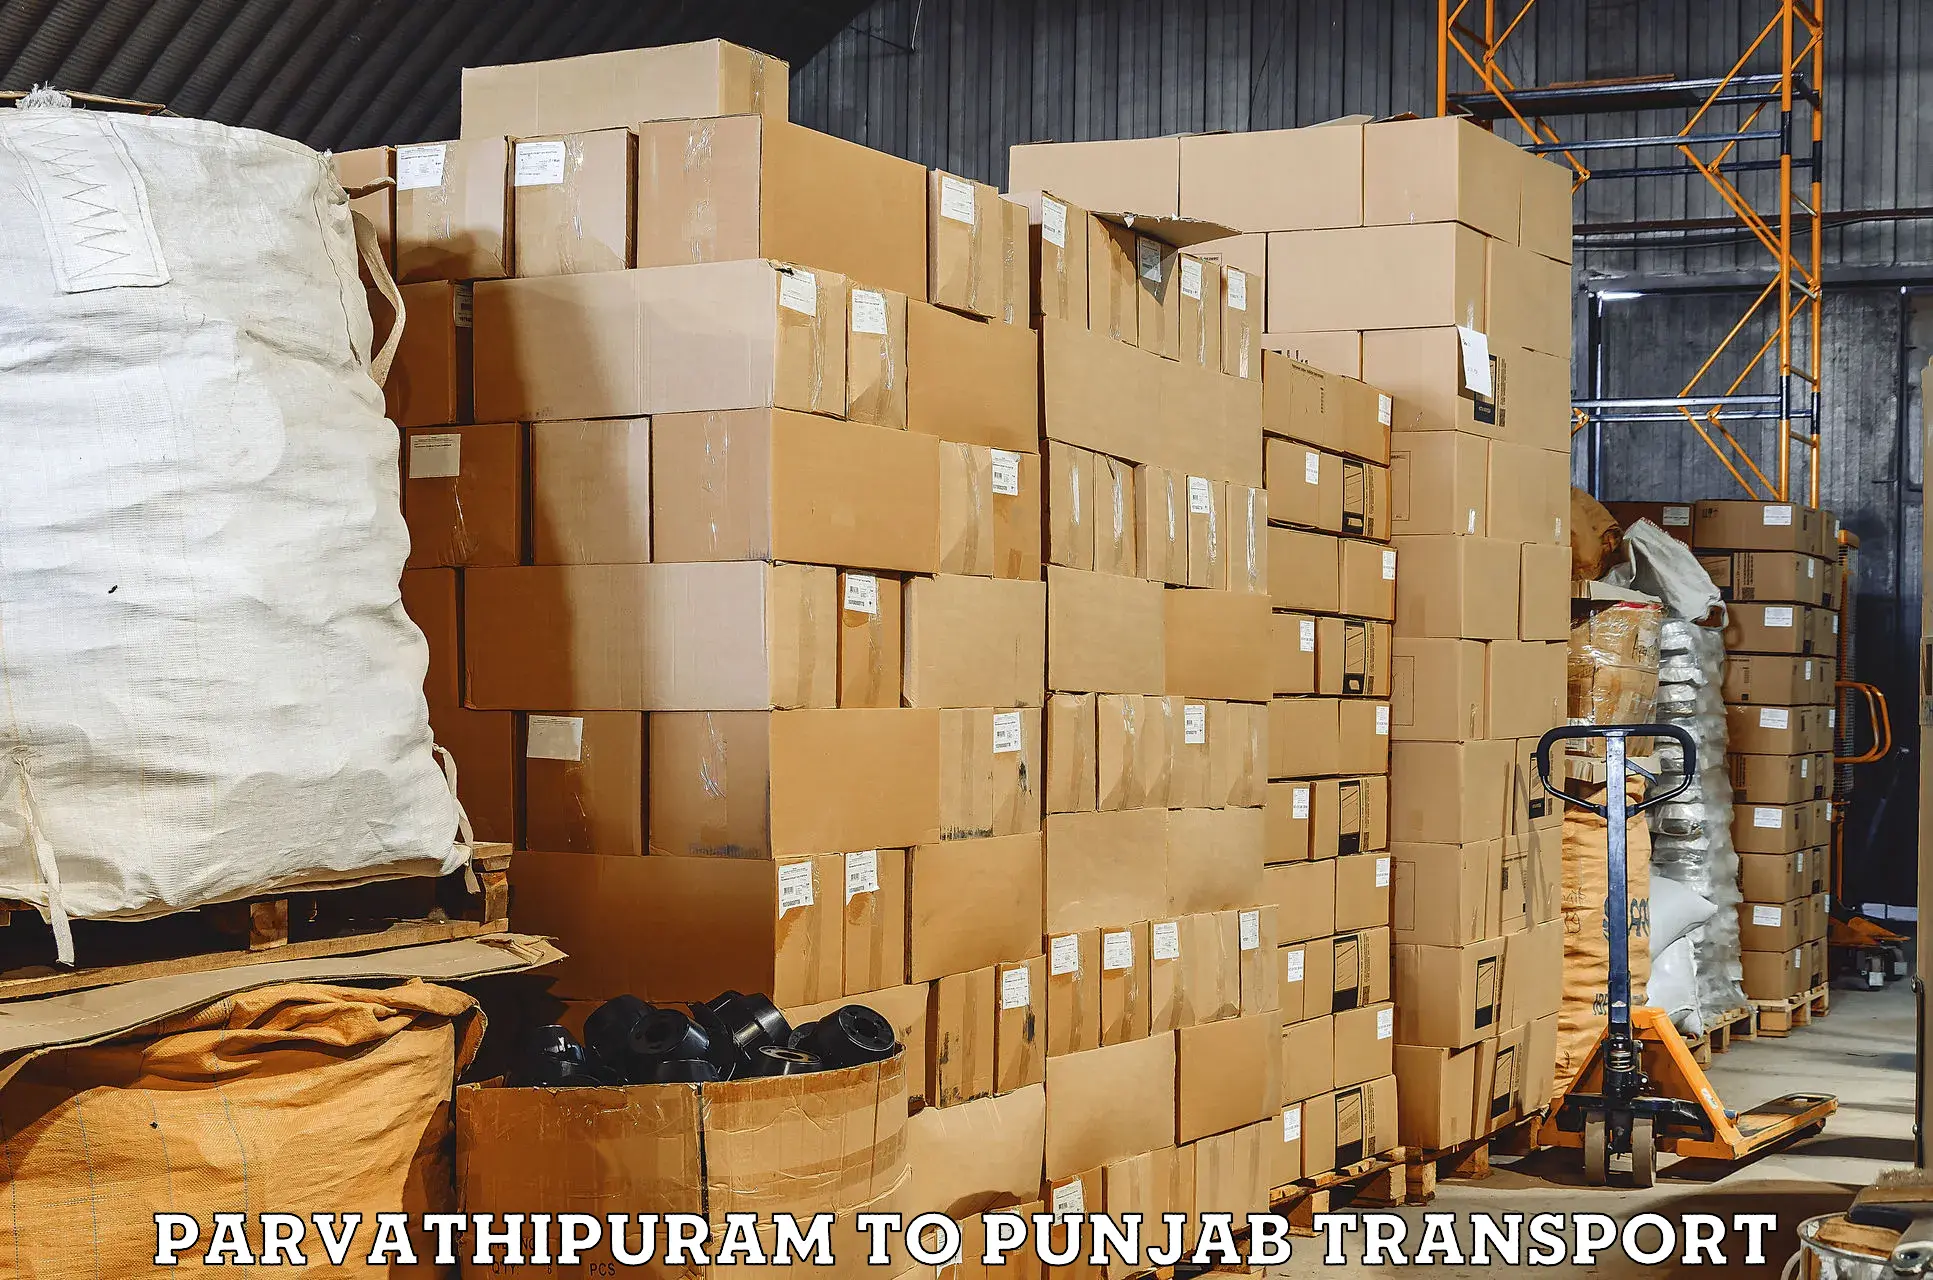 Bike shipping service Parvathipuram to Dinanagar